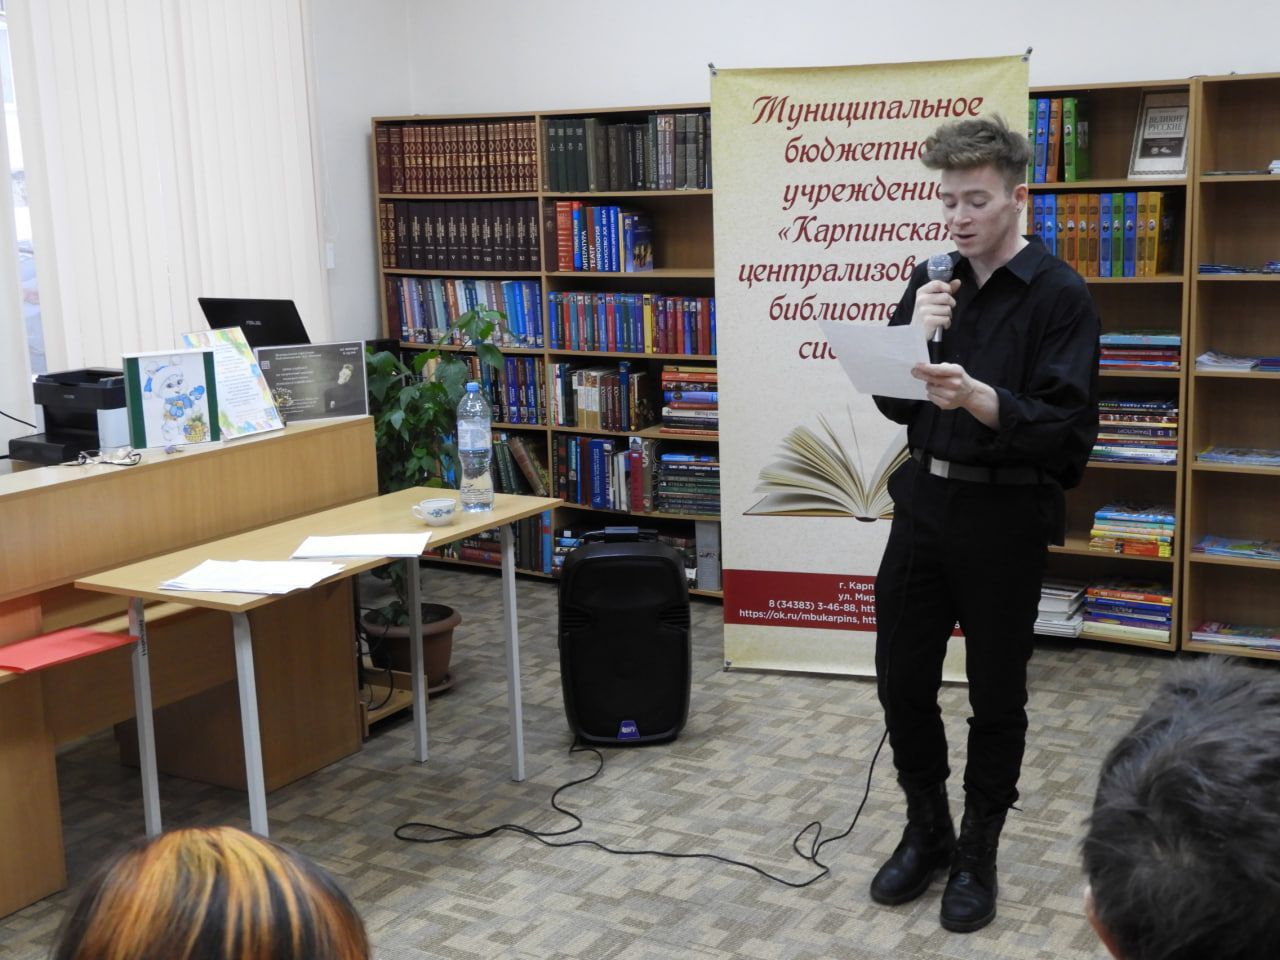 Стихи и танцы. Серовский поэт Роман Самойлов провел творческую встречу в карпинской библиотеке